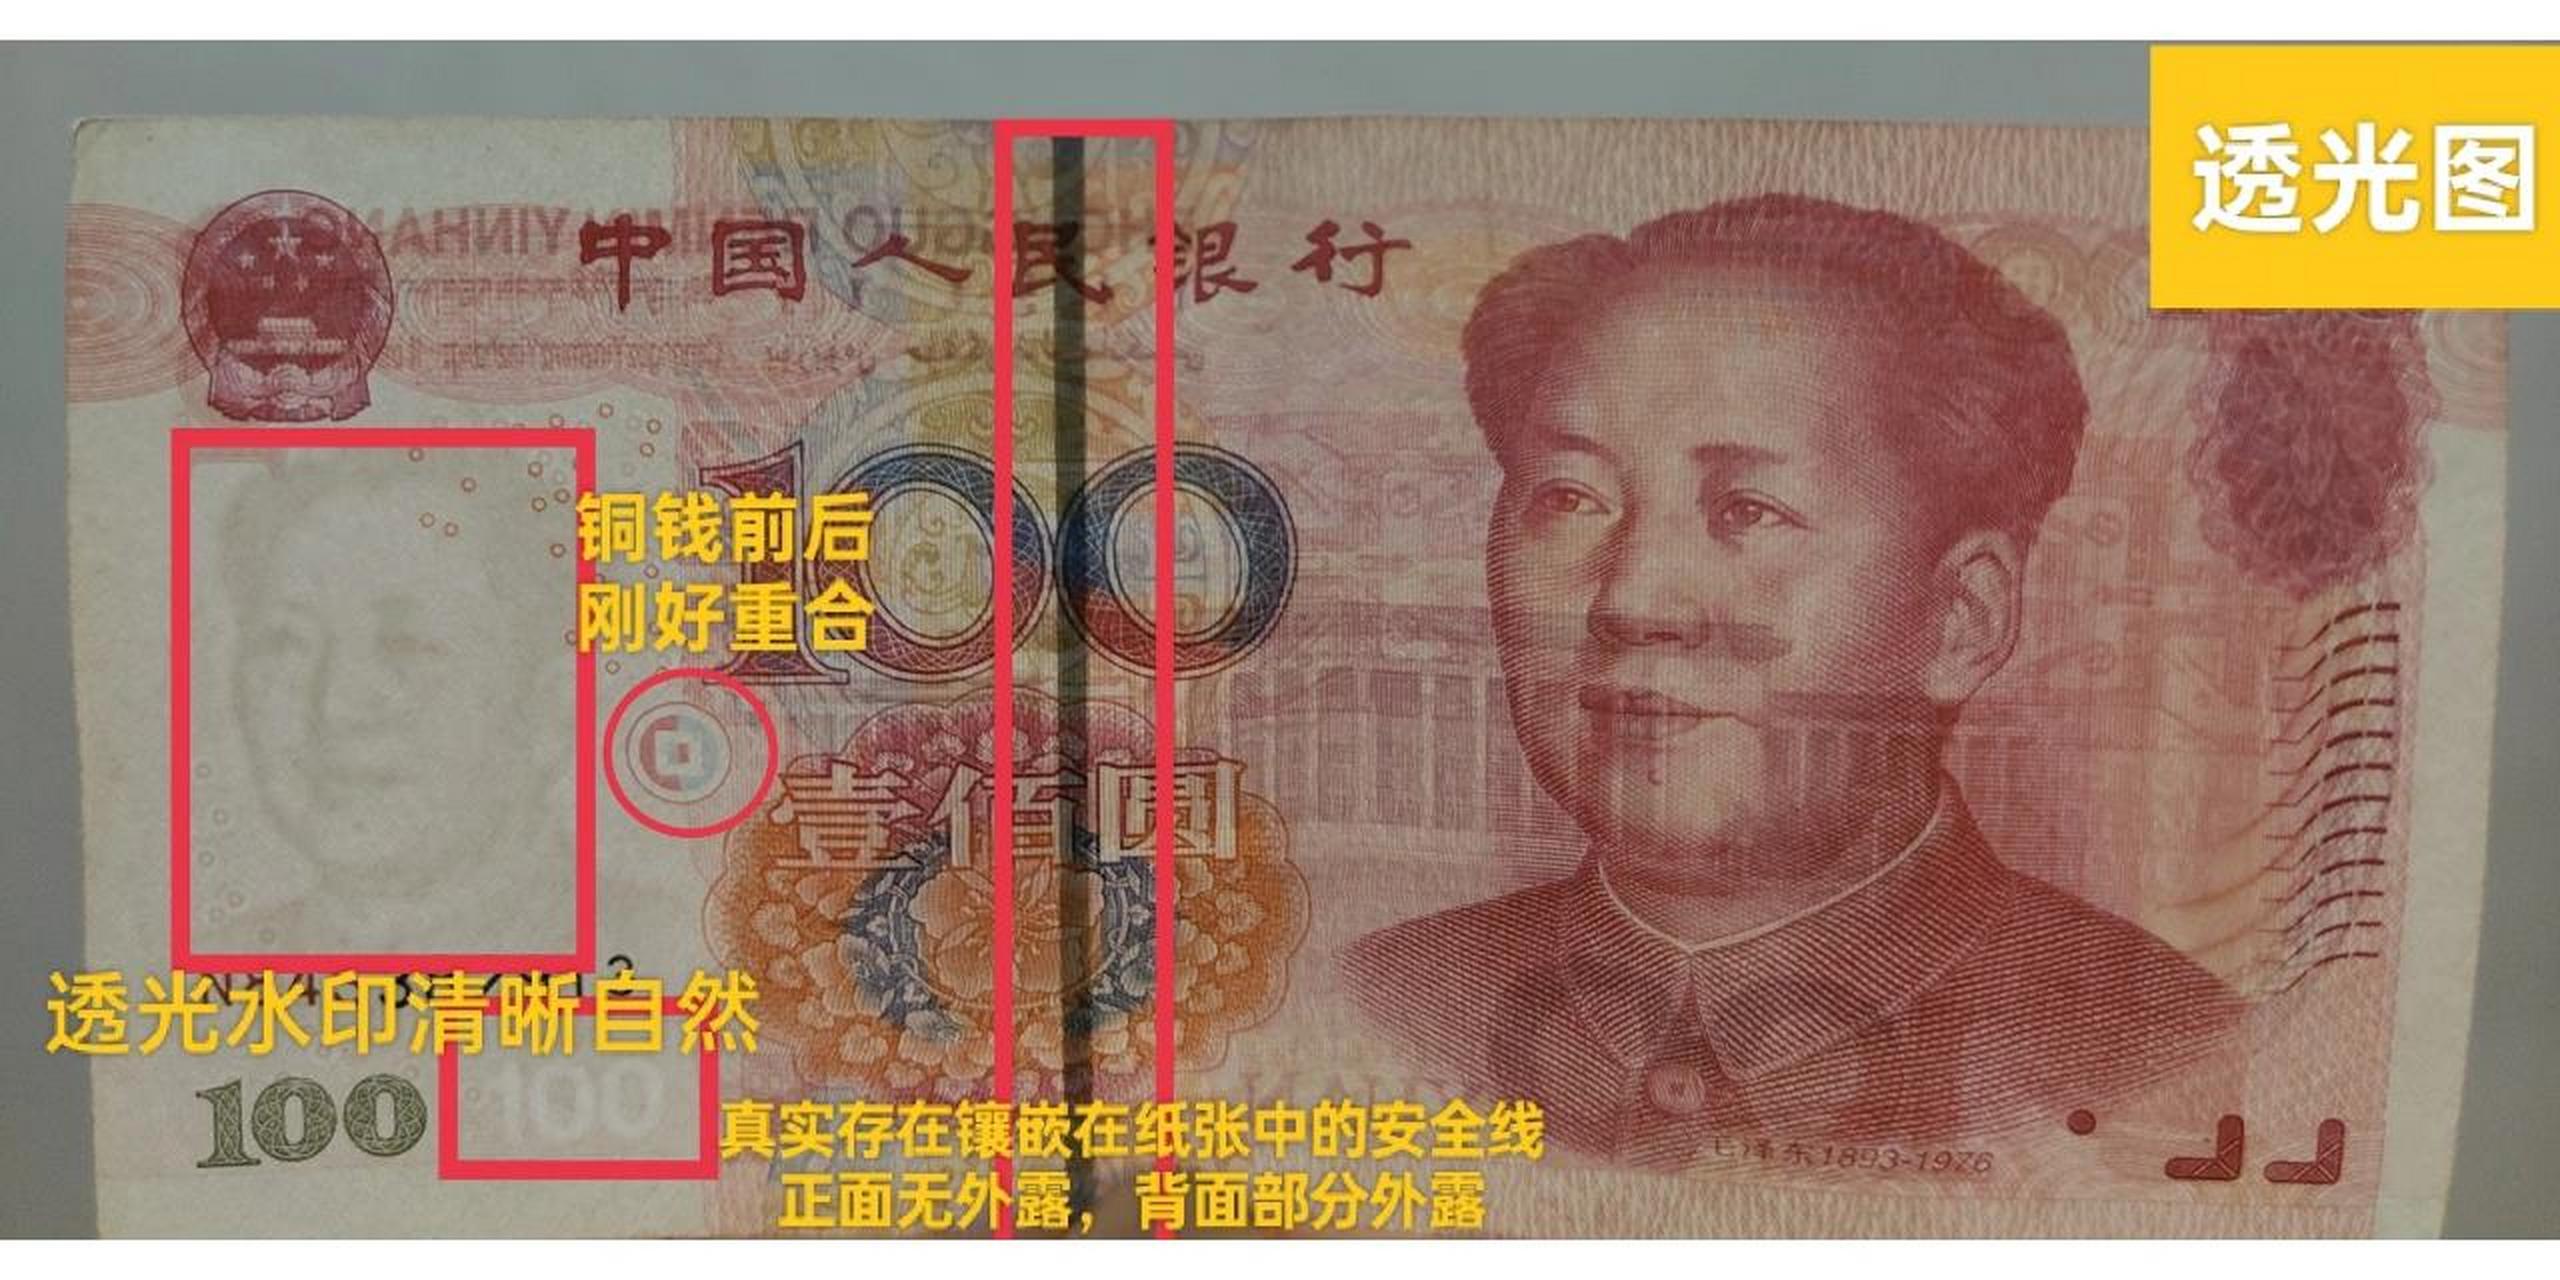 2005版100元人民币肉眼验钞方法 目前流通的100元人民币中,主流为2015